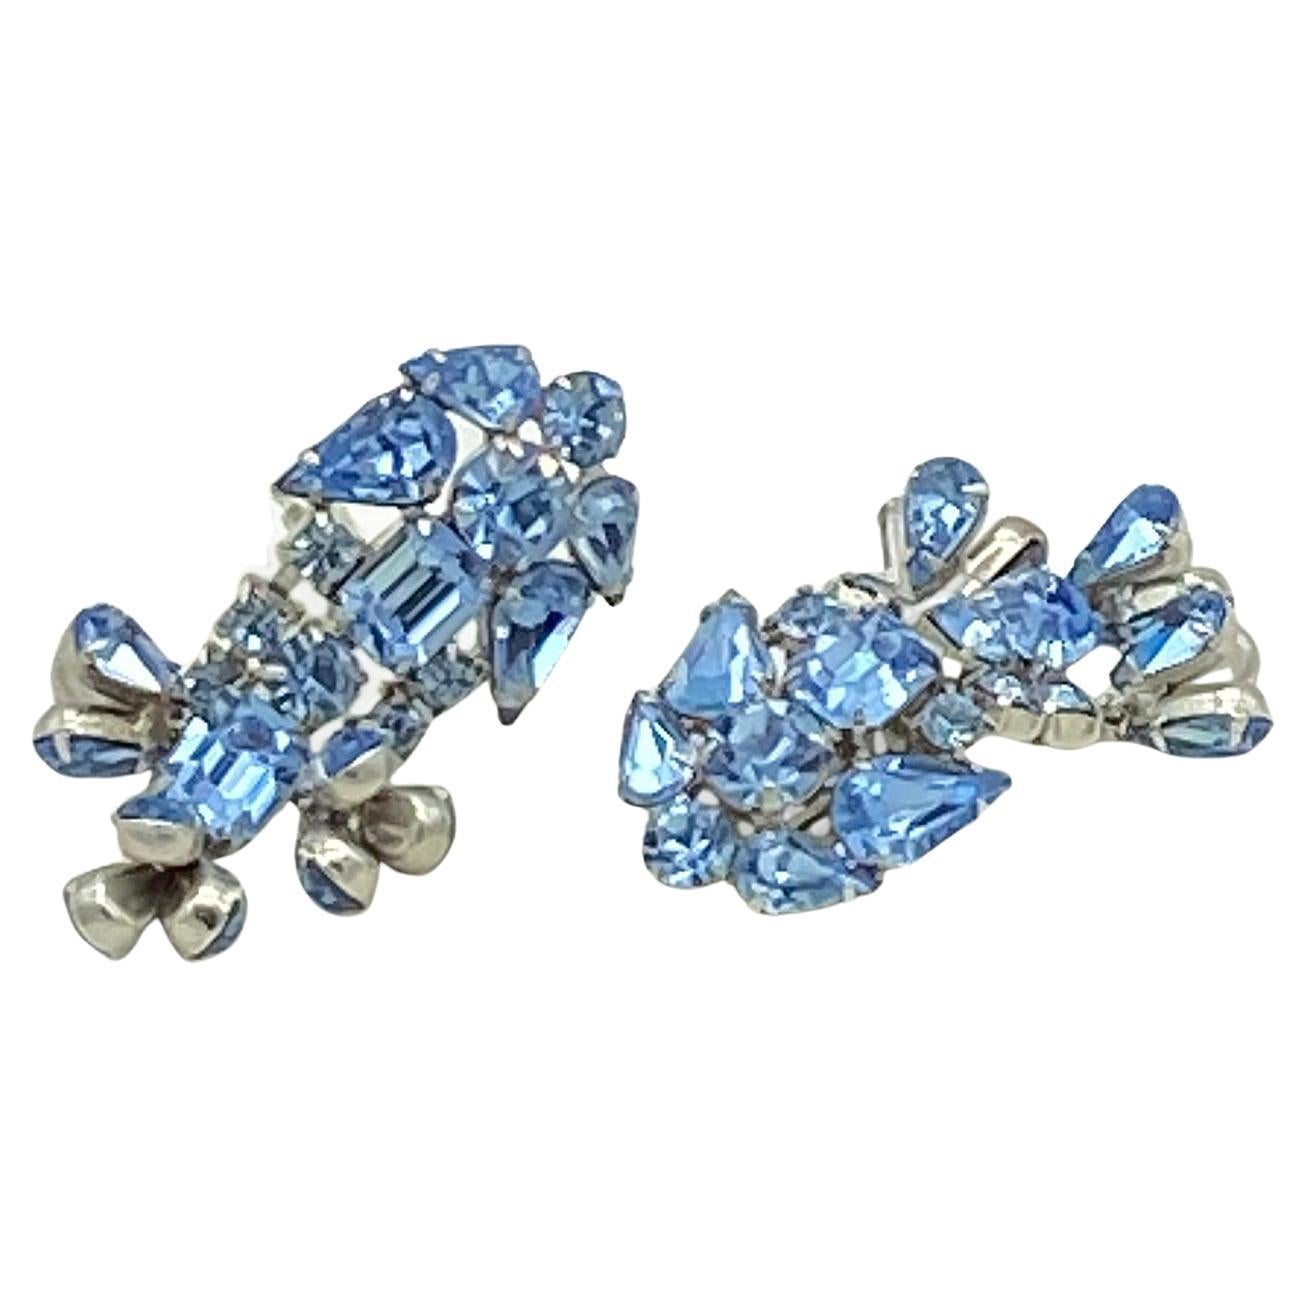 Il s'agit d'une paire de  Boucles d'oreilles pendantes en strass de style Hollywood Regency  serti de multiples strass bleus de forme différente sur métal plaqué rhodium. Ces boucles d'oreilles à clip ont un design inhabituel de triple 3 grappes de